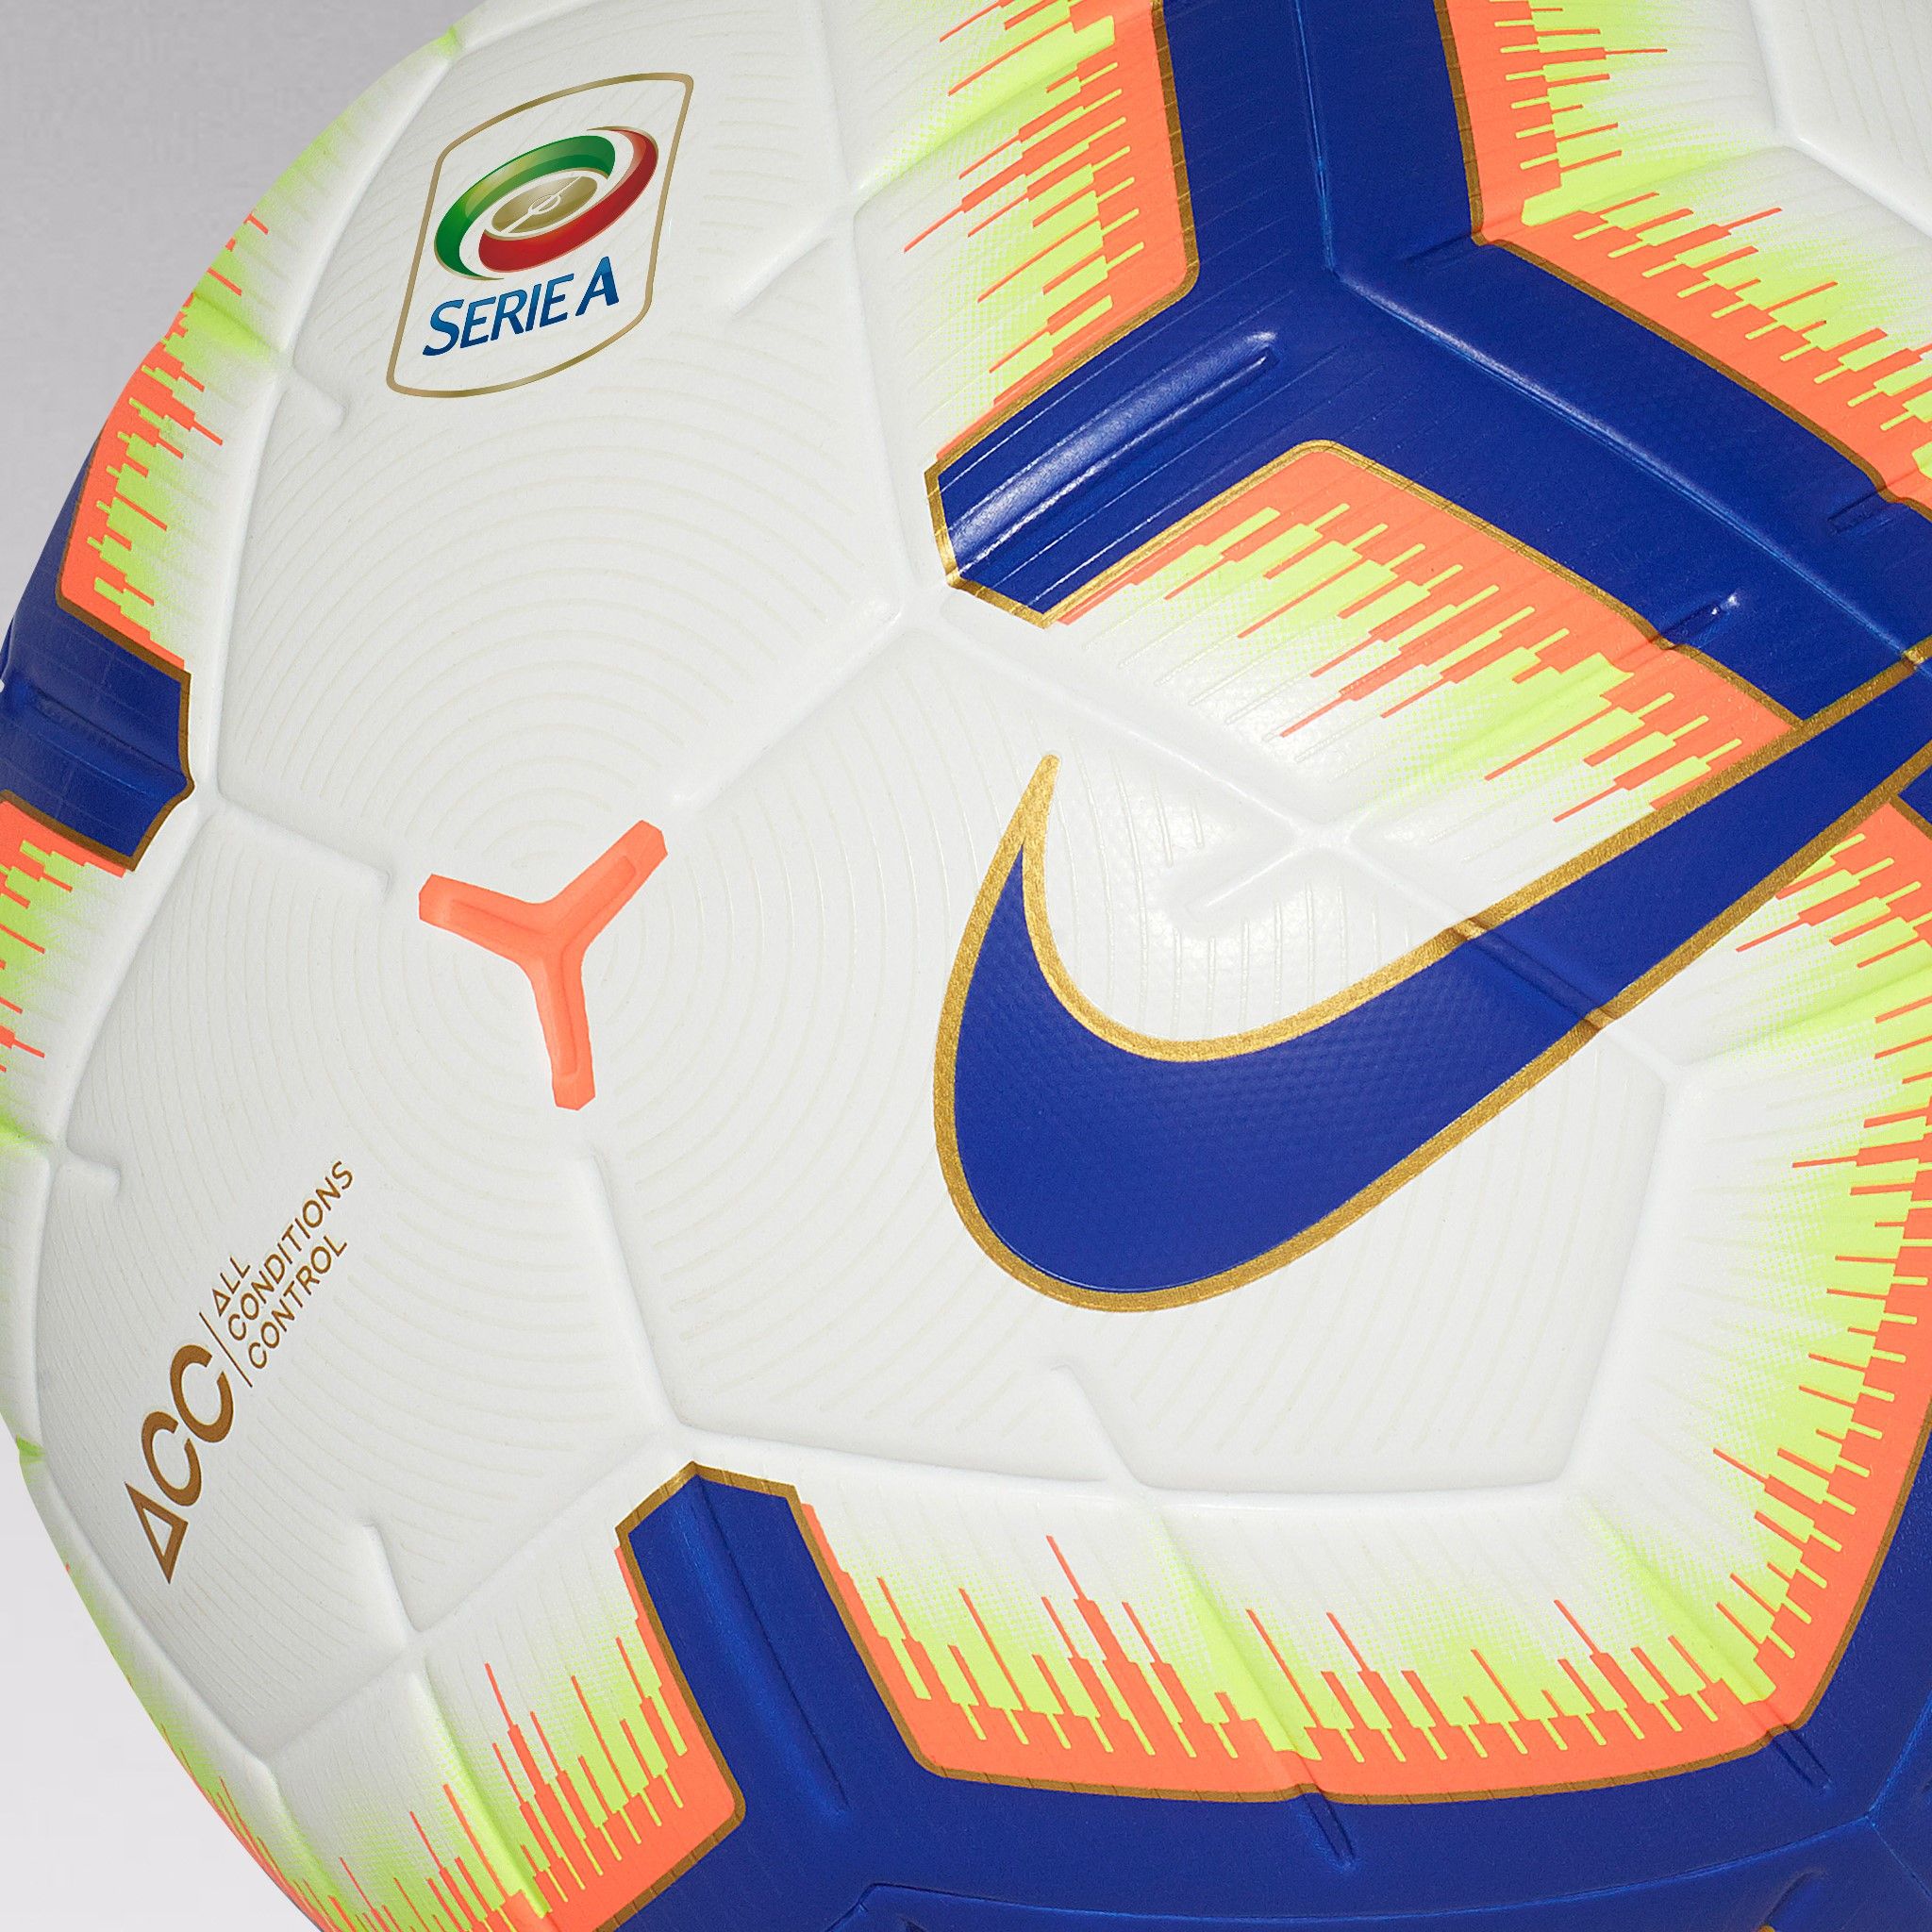 Ecco il pallone ufficiale della Serie A 2018-2019: da 12 a 4 pannelli -  Eurosport